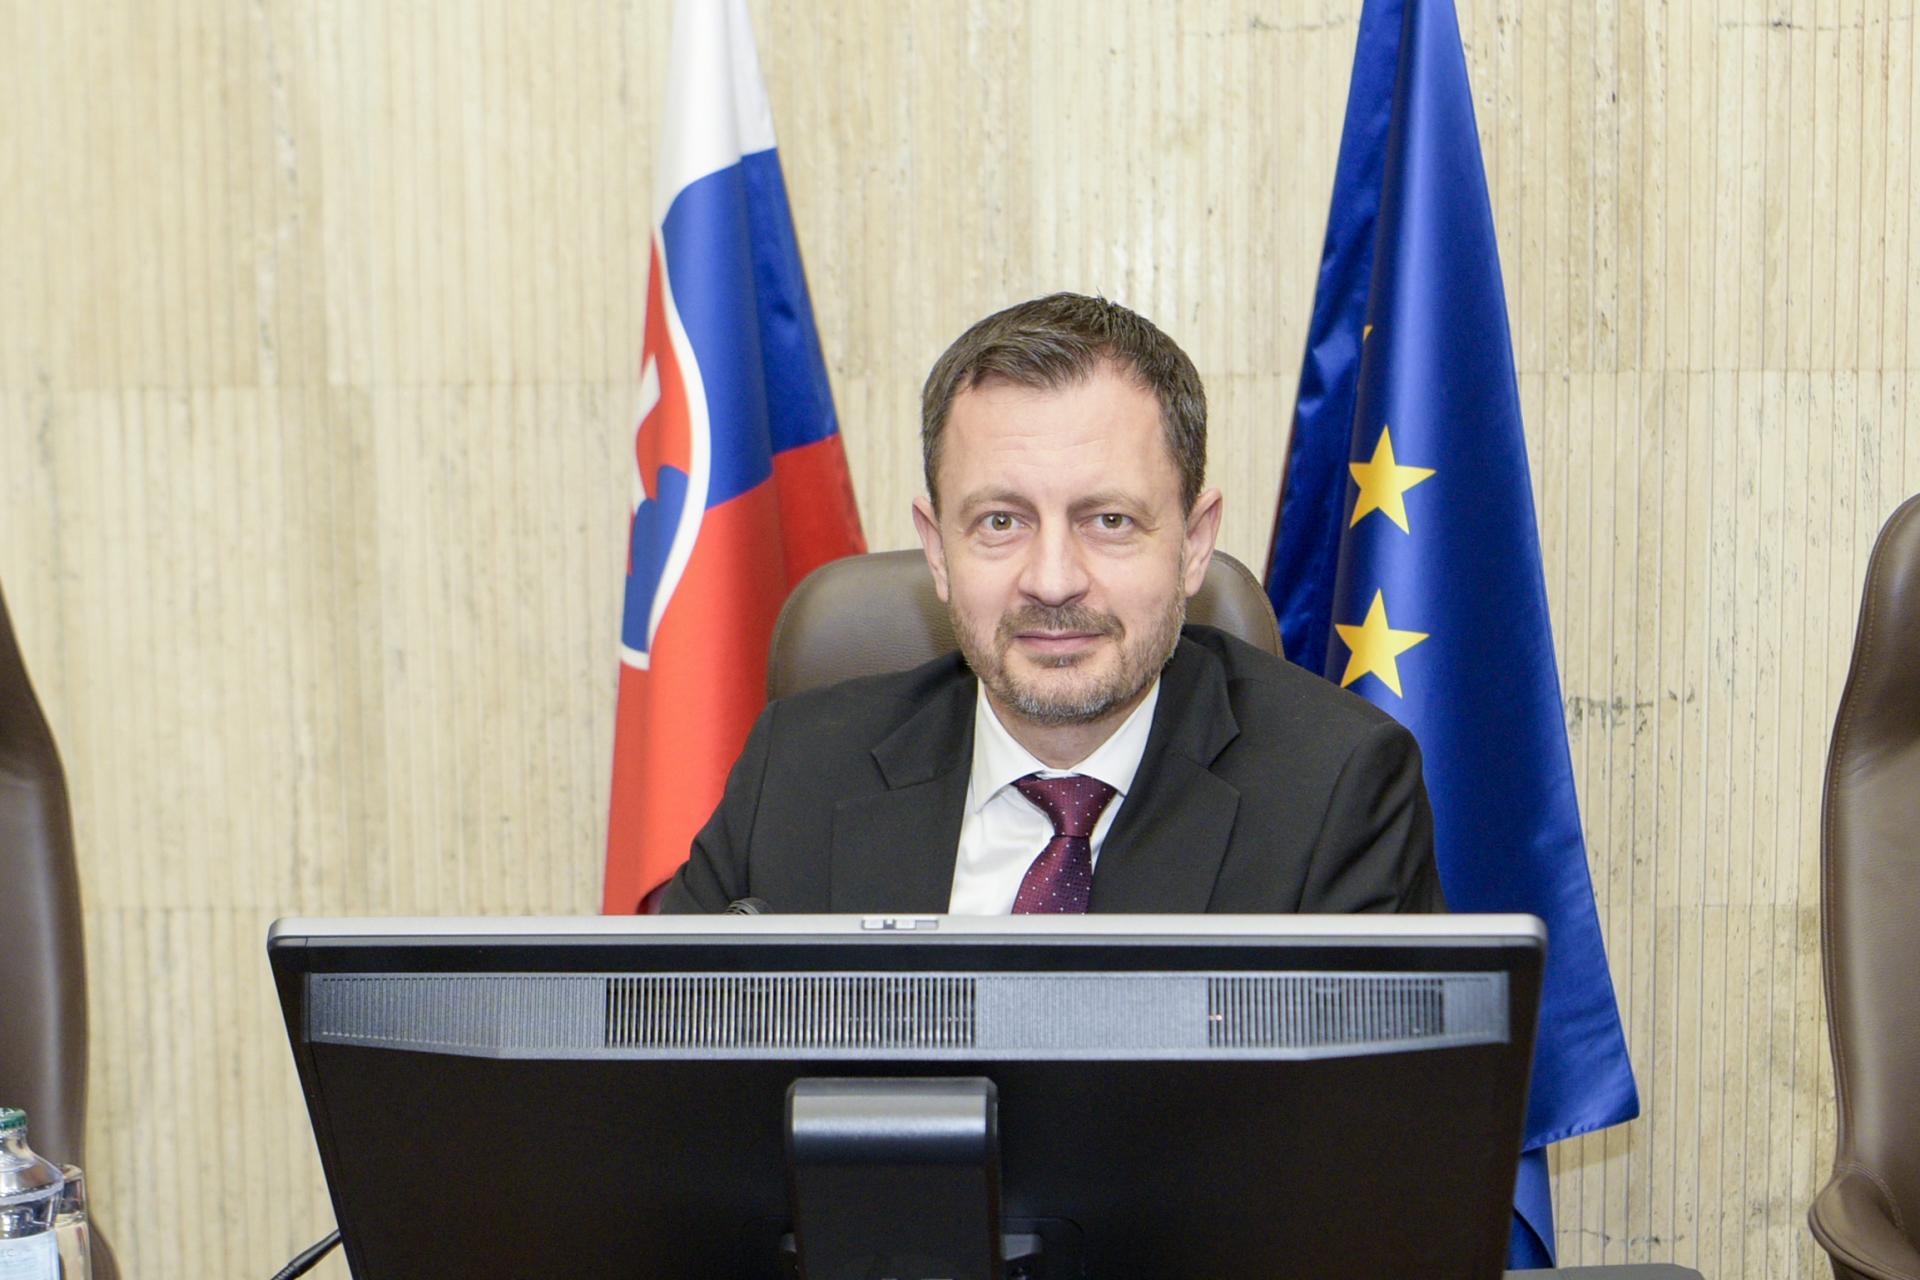 Európska komisia schválila Slovensku druhú žiadosť o platbu z plánu obnovy, informuje Heger